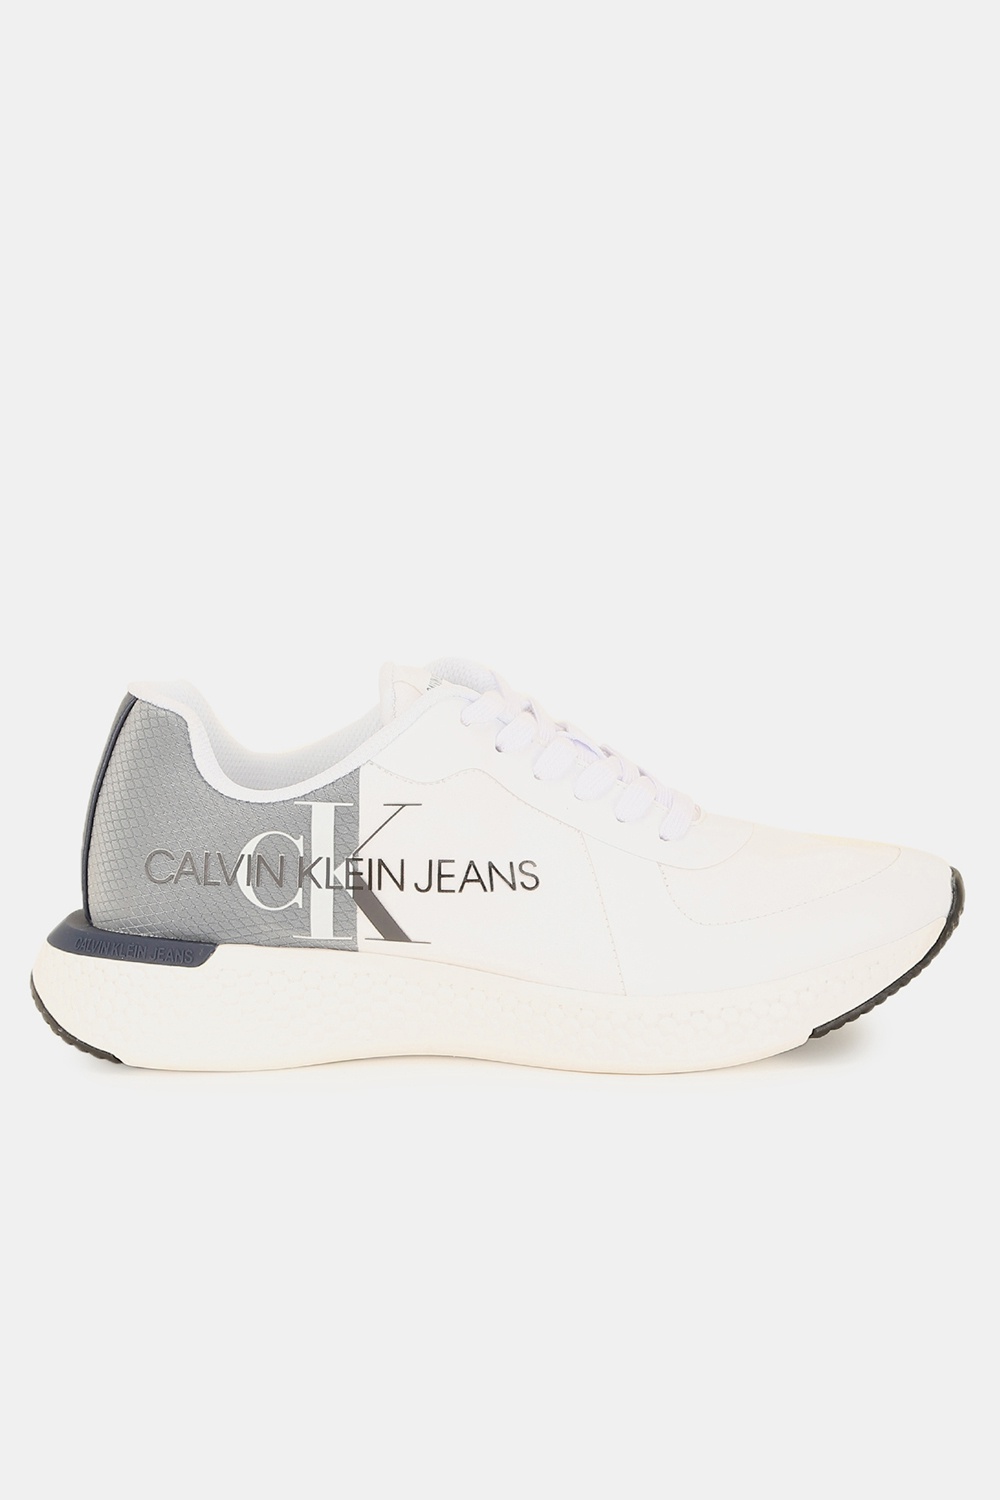 Calvin Klein Men's Sneakers 